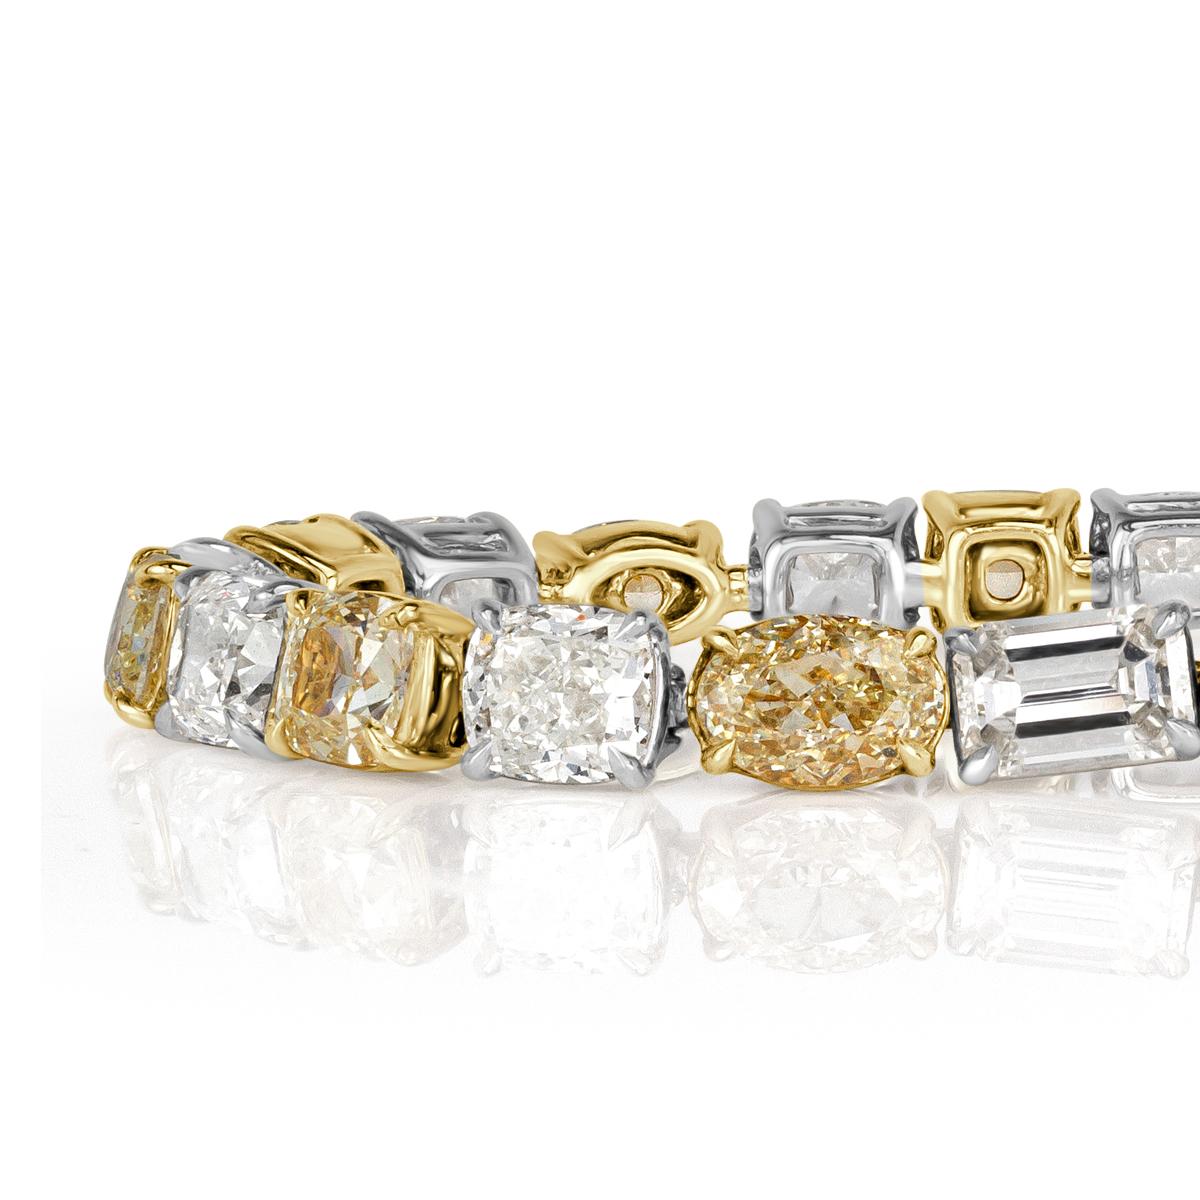 Dieses prächtige Diamantarmband ist mit einer Reihe von gelben und weißen Diamanten im Kissen-, Oval- und Smaragdschliff verziert. Sie haben eine Reinheitsklasse von VS1-VS2 und sind in einer zweifarbigen Fassung aus 18 Karat Weiß- und Gelbgold